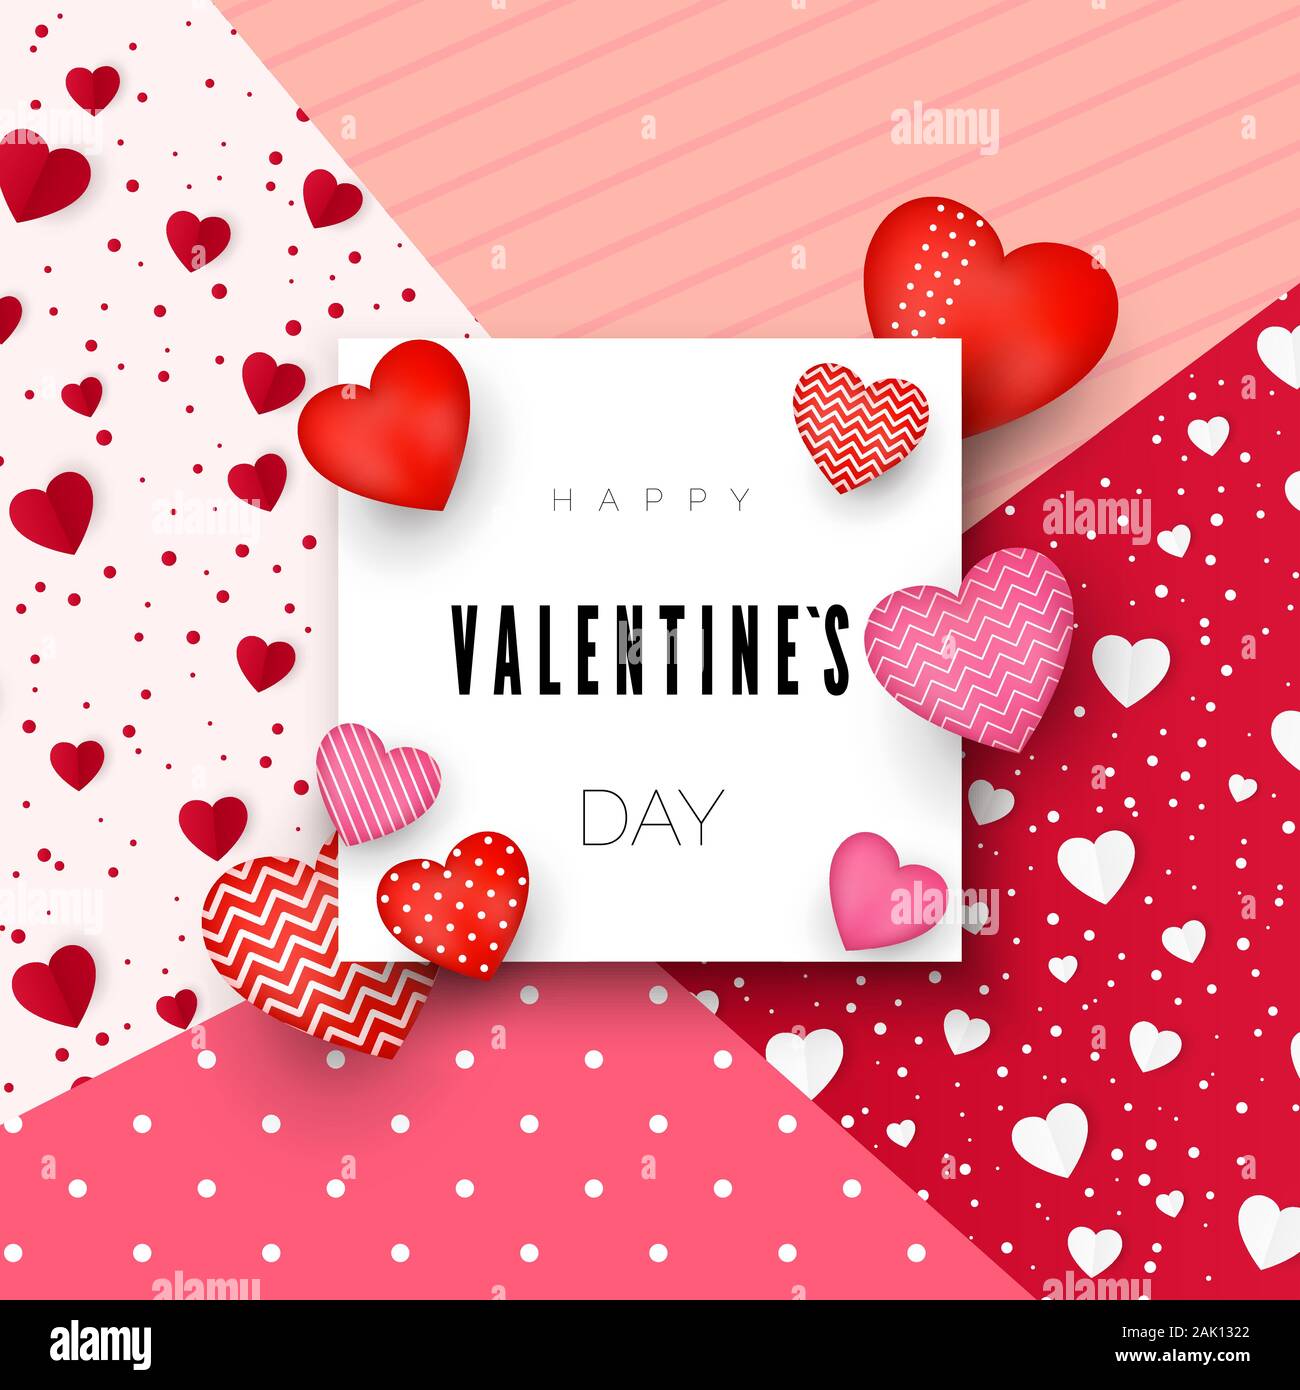 Happy Valentine's Day Grußkarte oder Einladung Design. Februar 14 Tag der Liebe und Romantik. Holiday Banner mit roten Herzen. Vector Illustration Stock Vektor